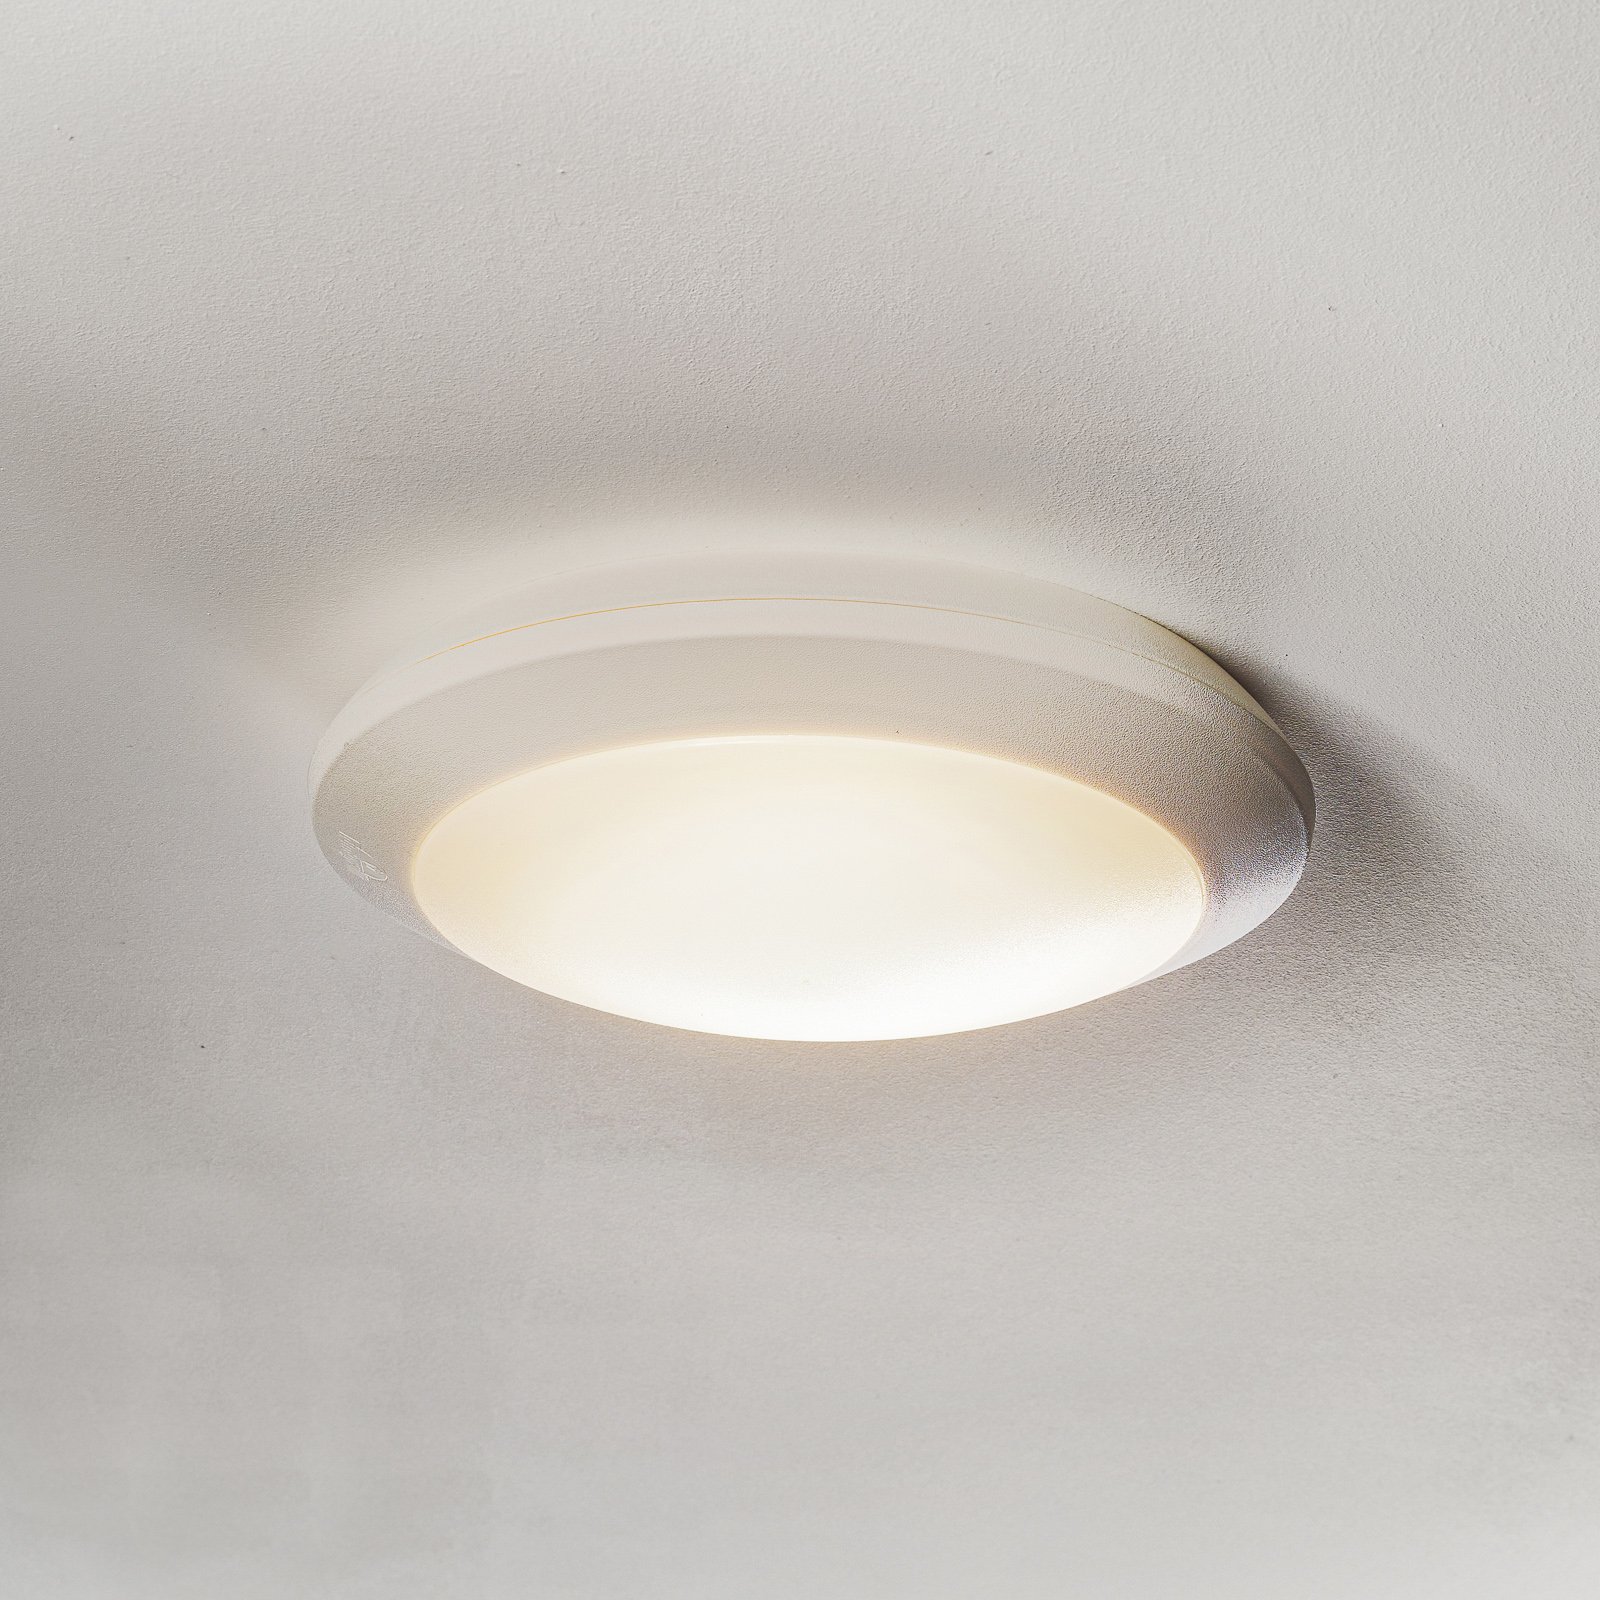 Umberta sensor LED ceiling light white, CCT